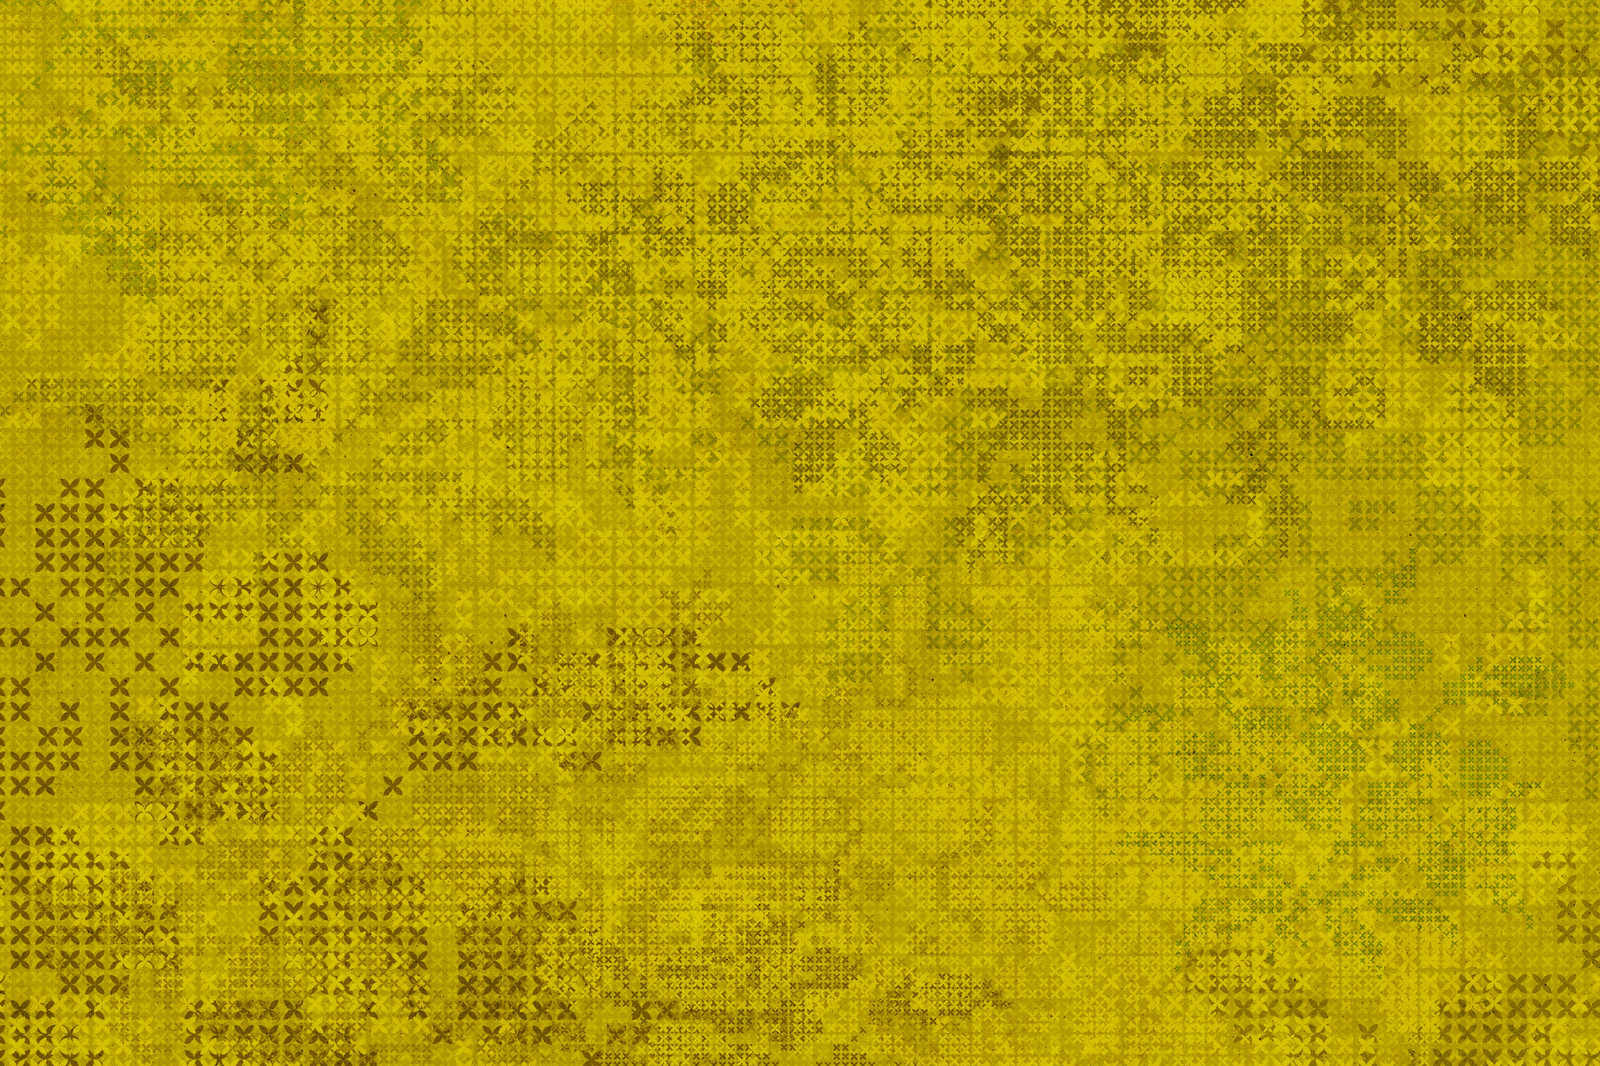             Pixel Leinwandbild Kreuzstich Muster – 1,20 m x 0,80 m
        